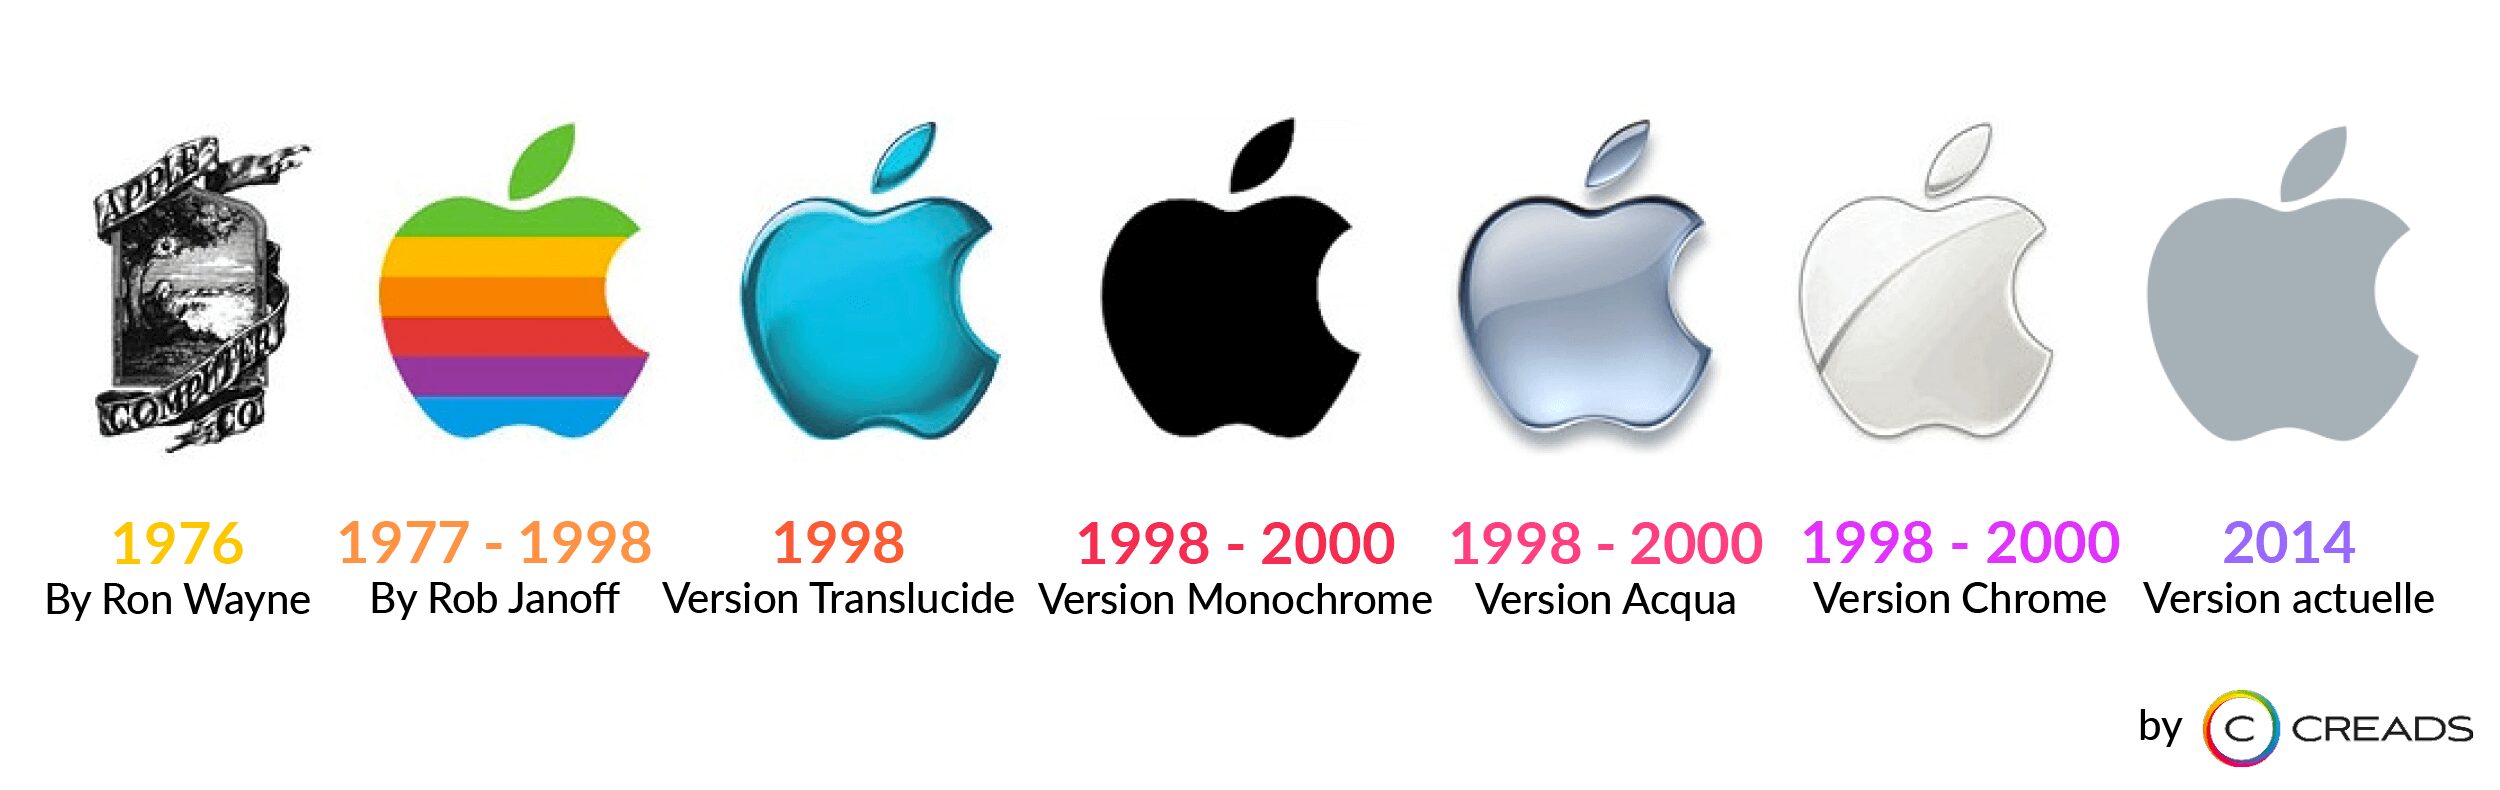 Evolution et histoire du logo Apple